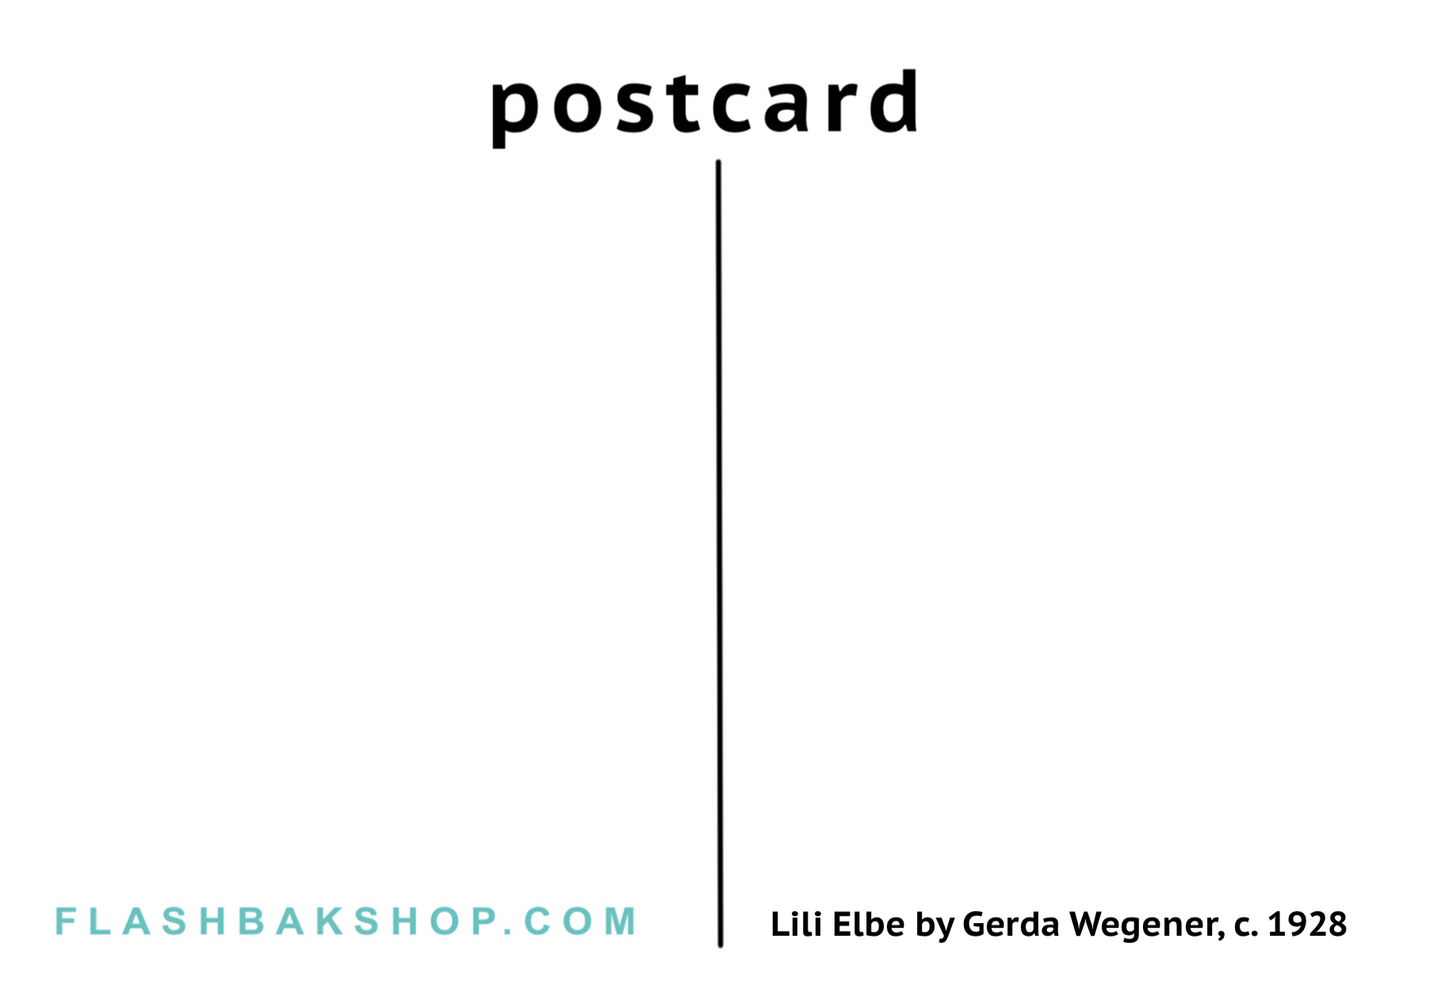 Lili Elbe by Gerda Wegener, c. 1928 - Postcard